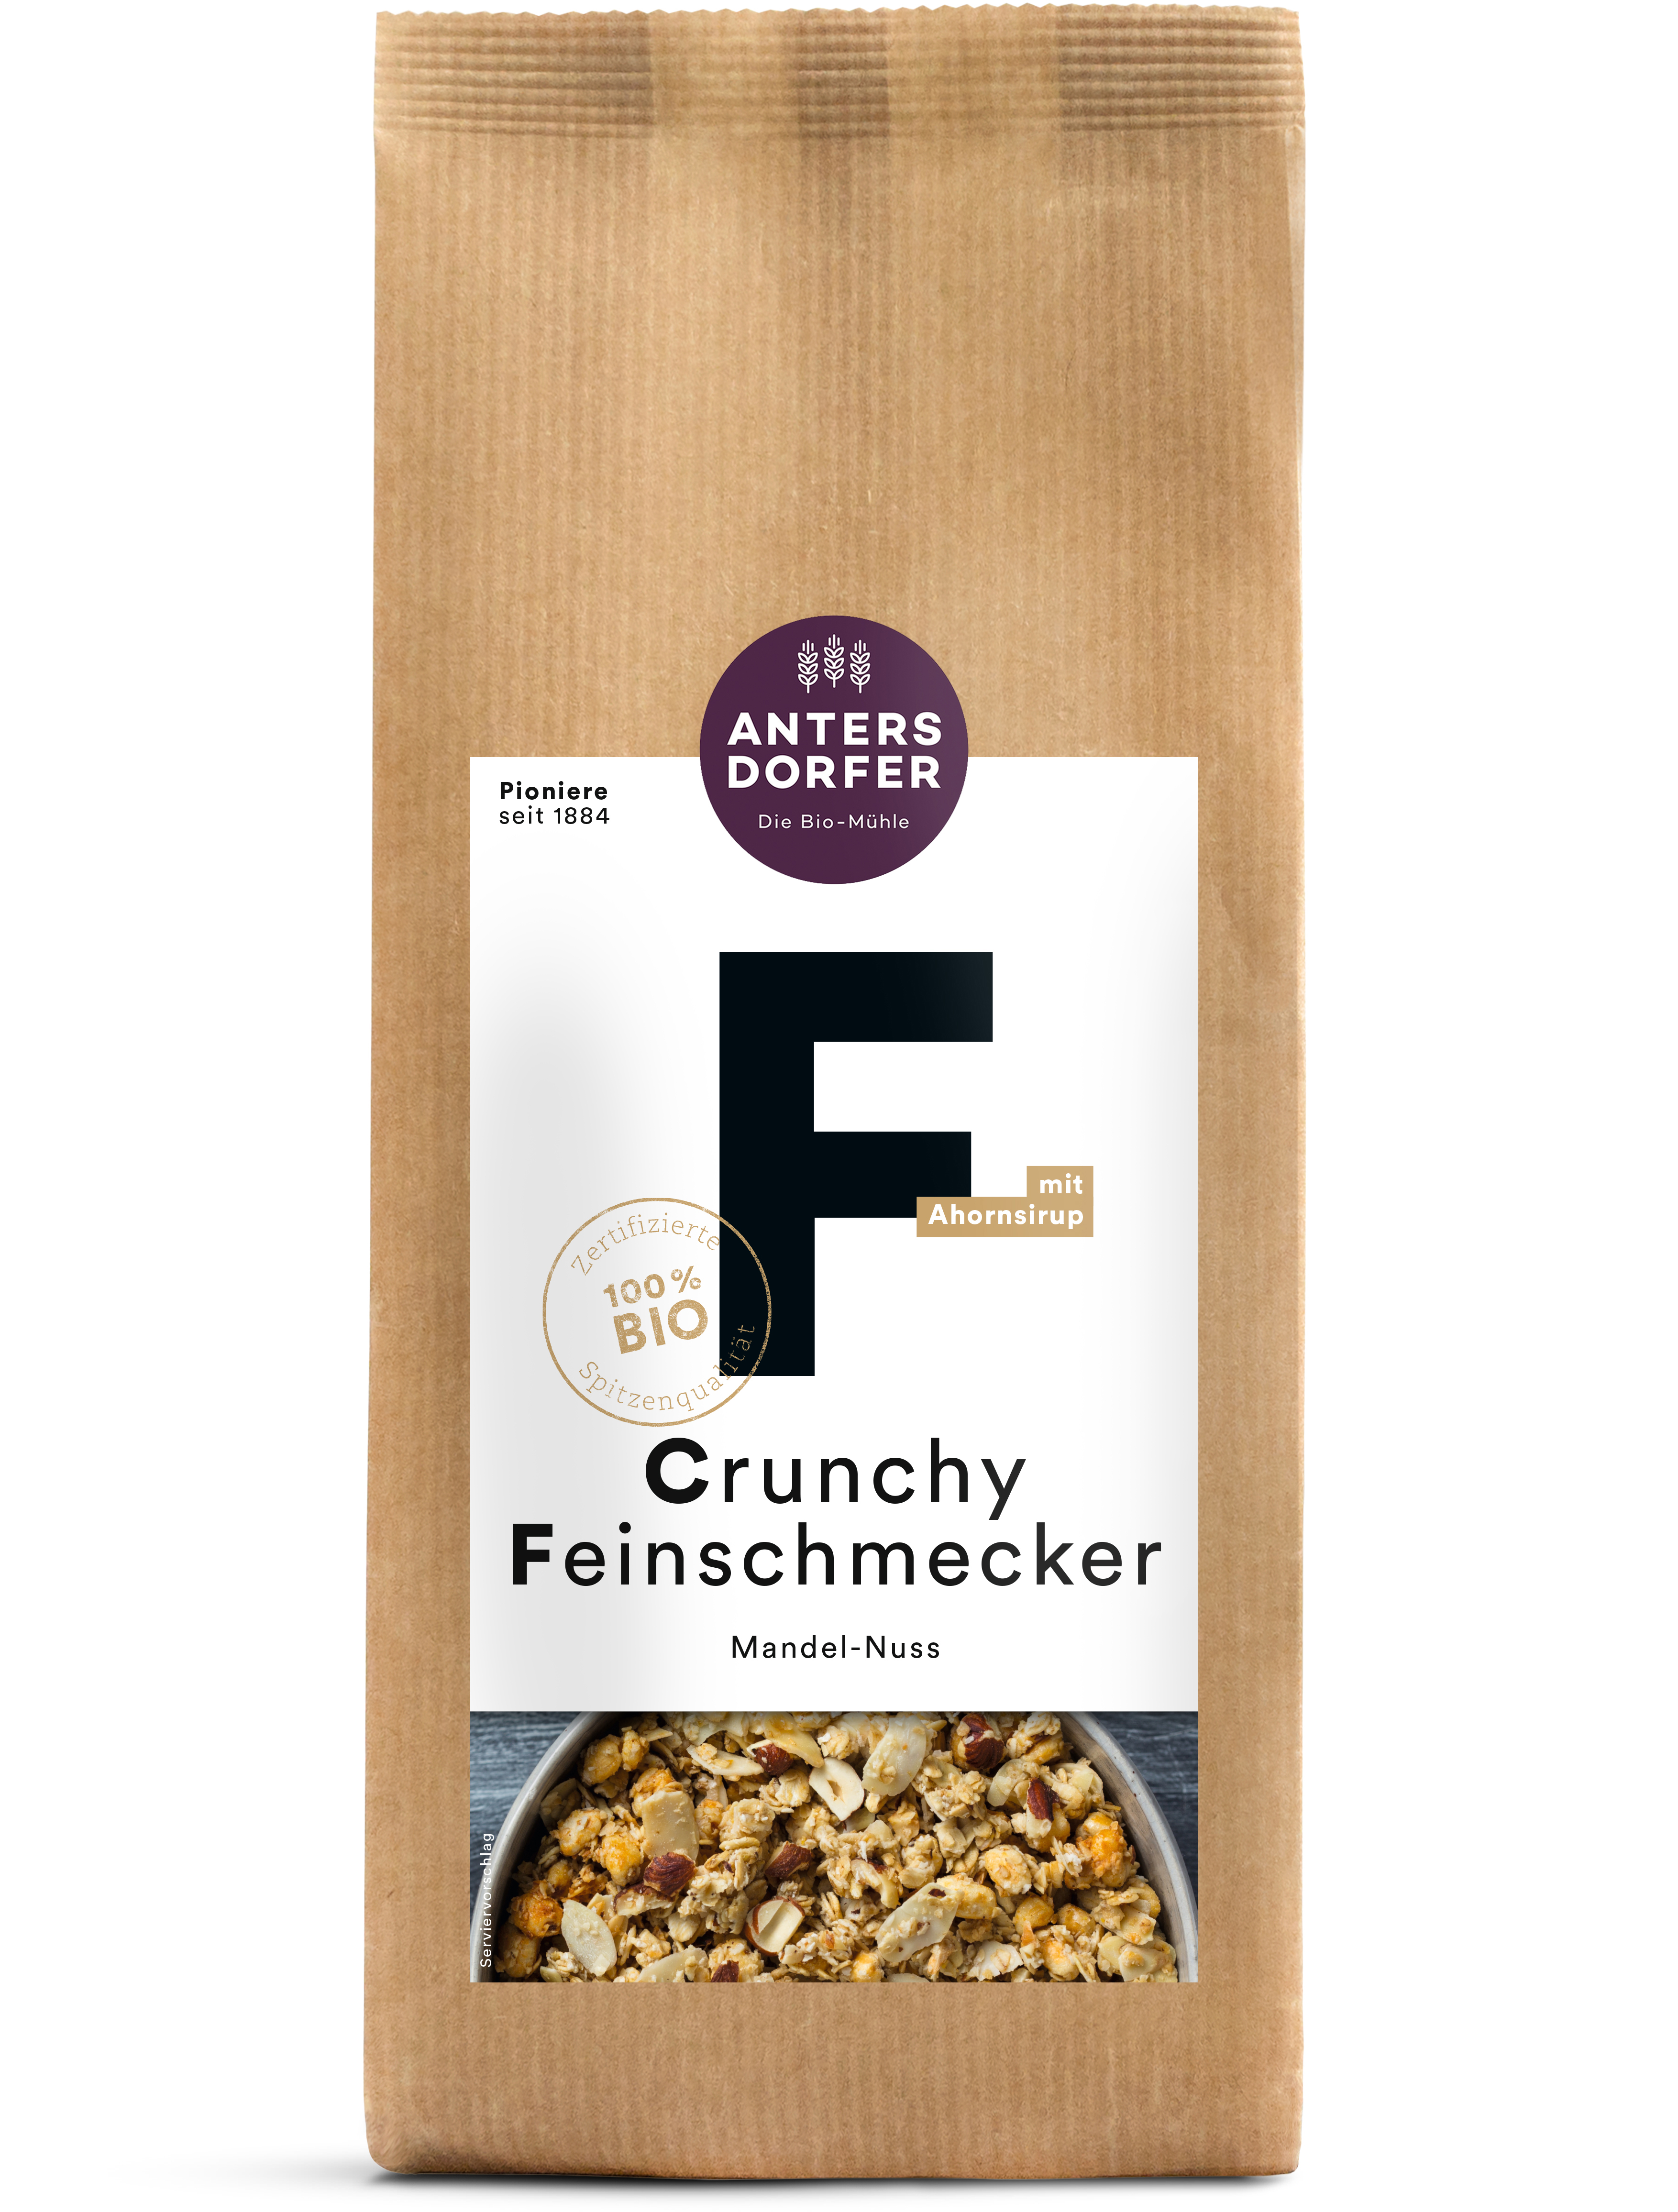 Crunchy Feinschmecker